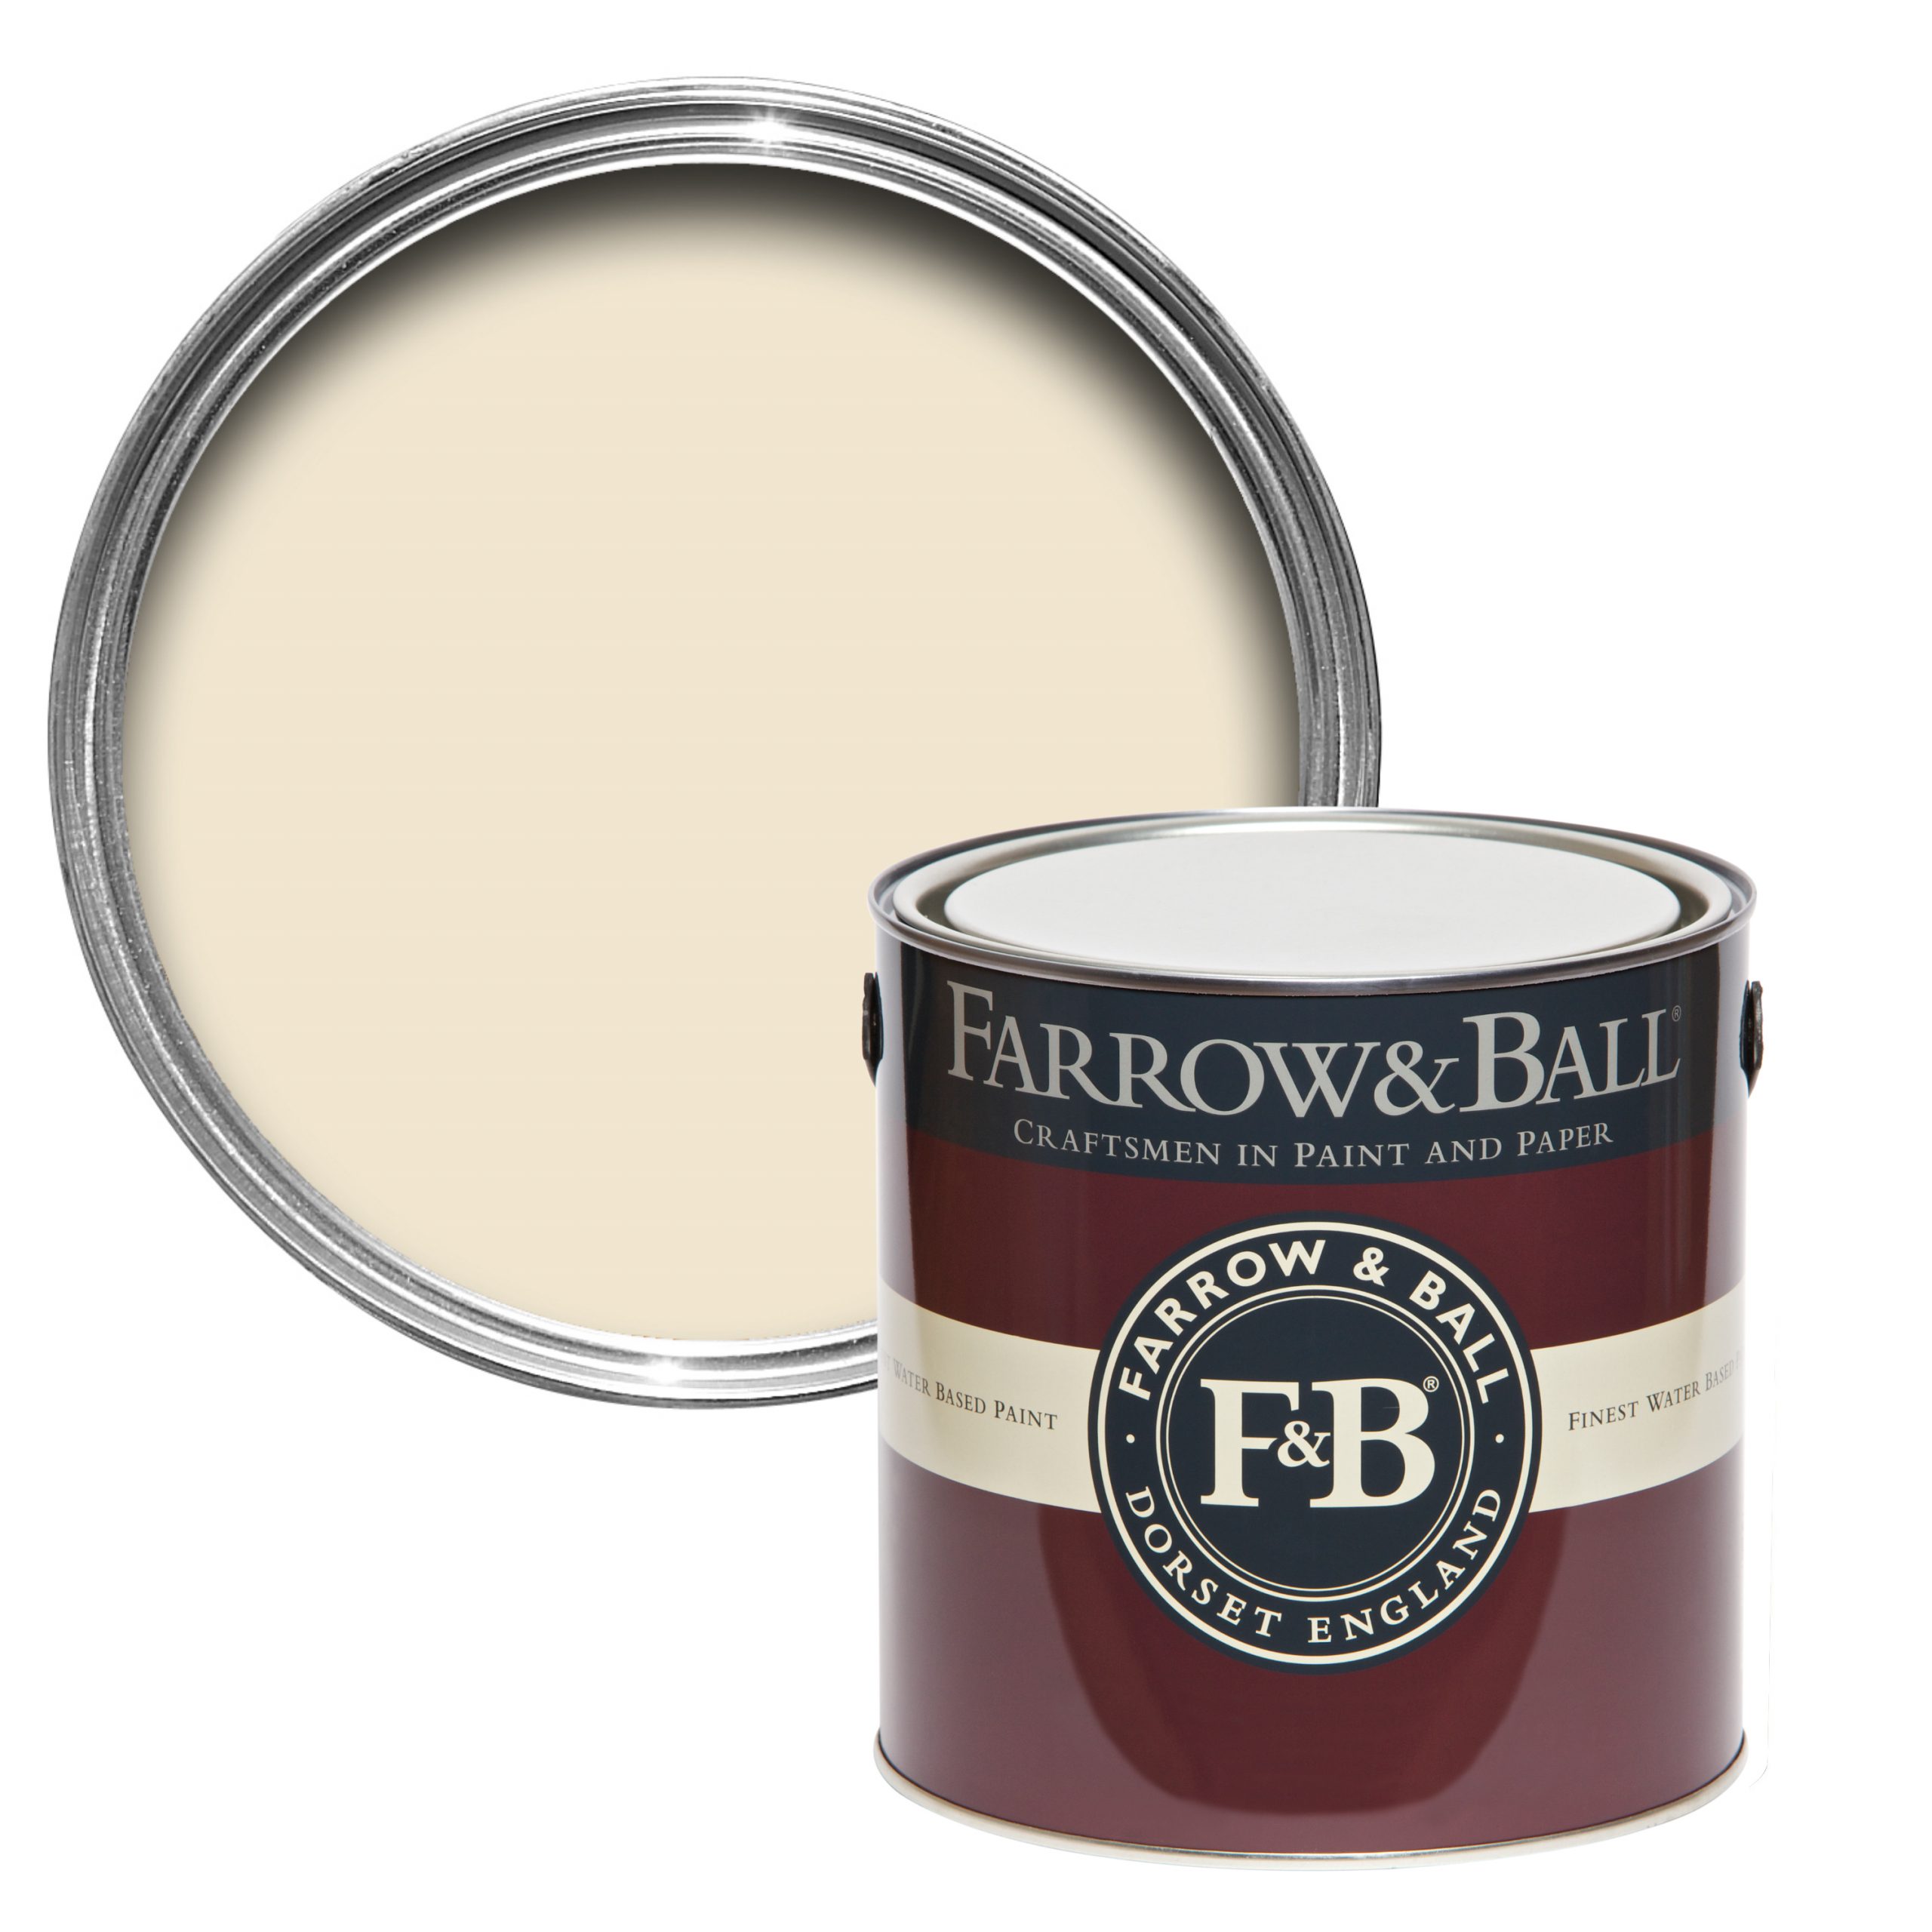 Vopsea alba mata 2% luciu pentru interior Farrow & Ball Casein Distemper White Tie No. 2002 5 Litri